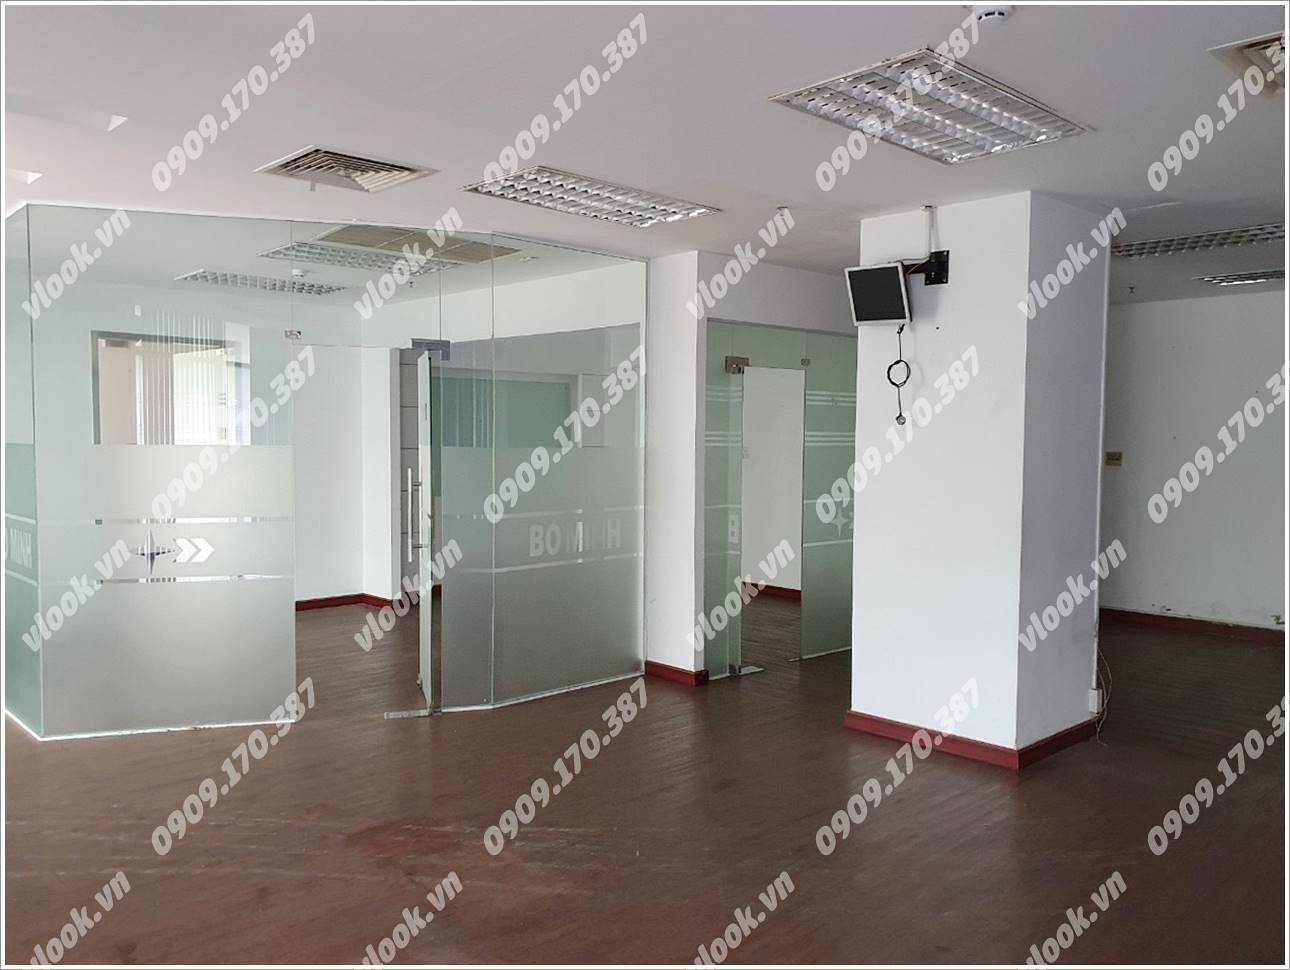 Cao ốc văn phòng cho thuê Cao ốc An Cư, Thái Thuận, Quận 2 TP.HCM - vlook.vn